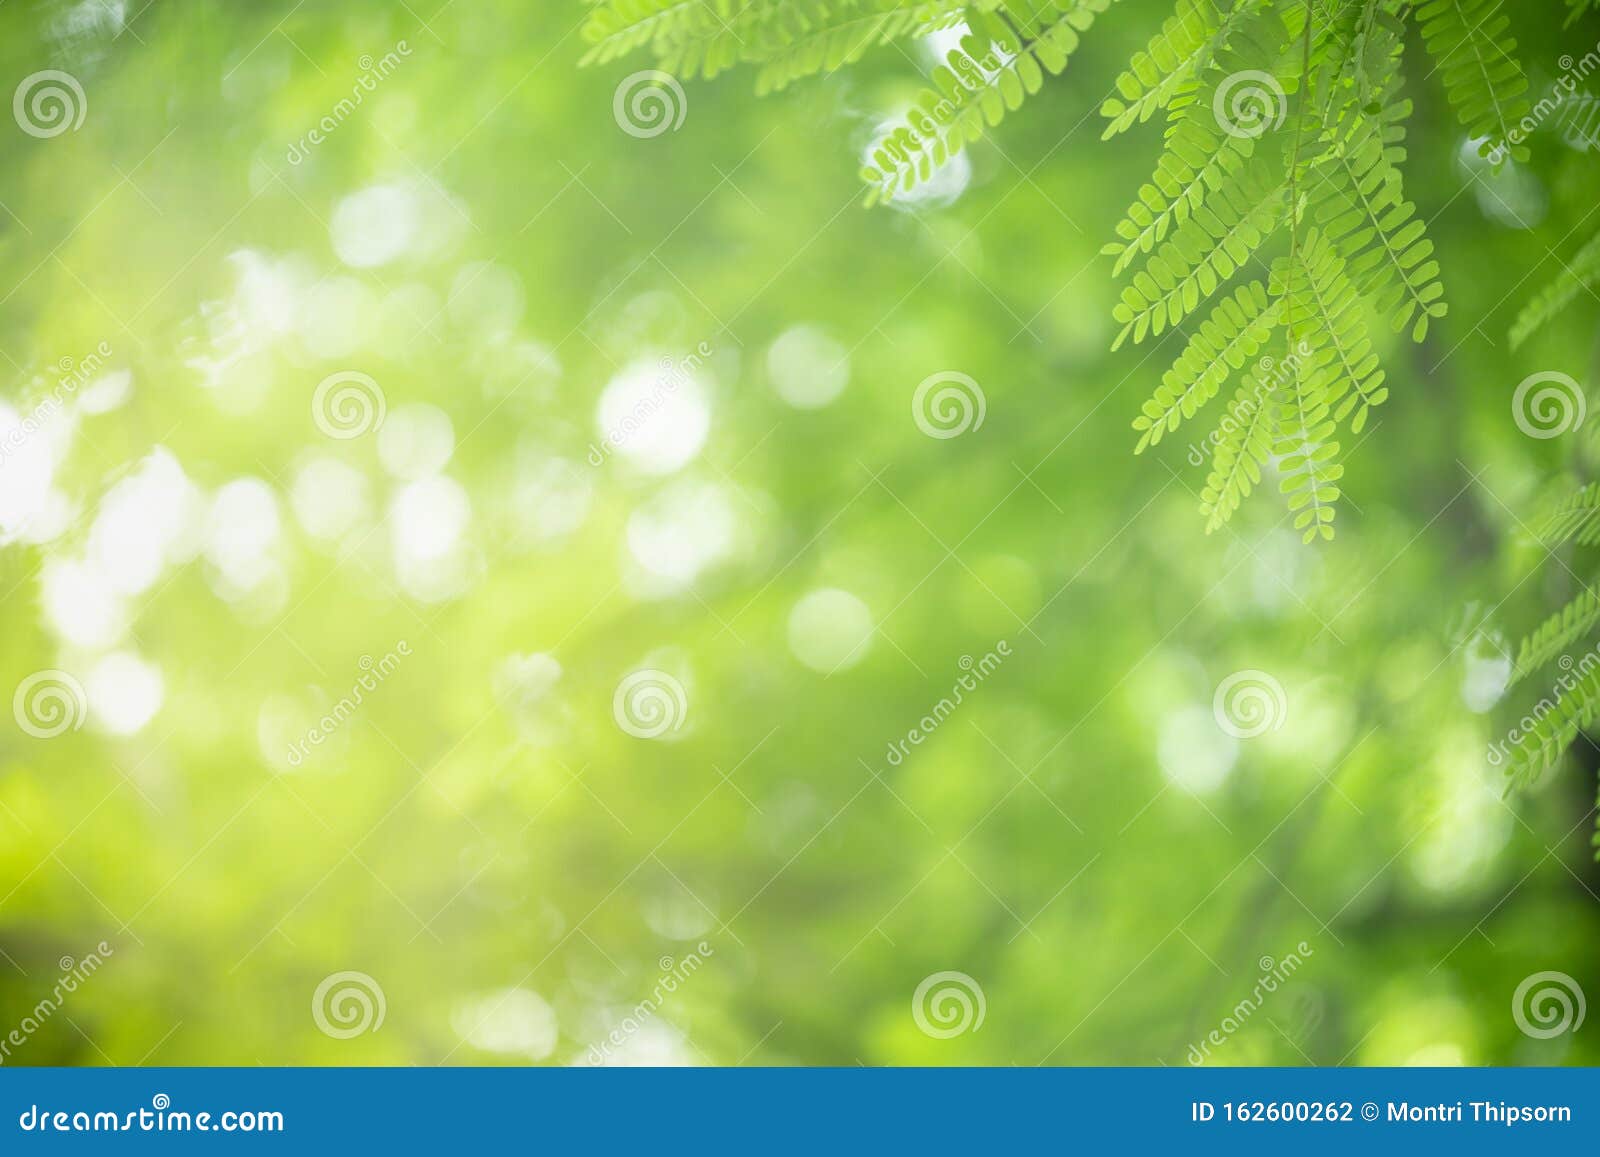 Chi tiết lá xanh trên nền mờ xanh cây sẽ mang lại cảm giác bình yên và xanh mát cho máy tính của bạn. Ảnh được chụp cận cảnh, hiển thị chi tiết về lá cây và làm cho bức ảnh trở nên sống động hơn. Đây sẽ là một bức ảnh đẹp để tạo nên sự khác biệt cho máy tính của bạn.